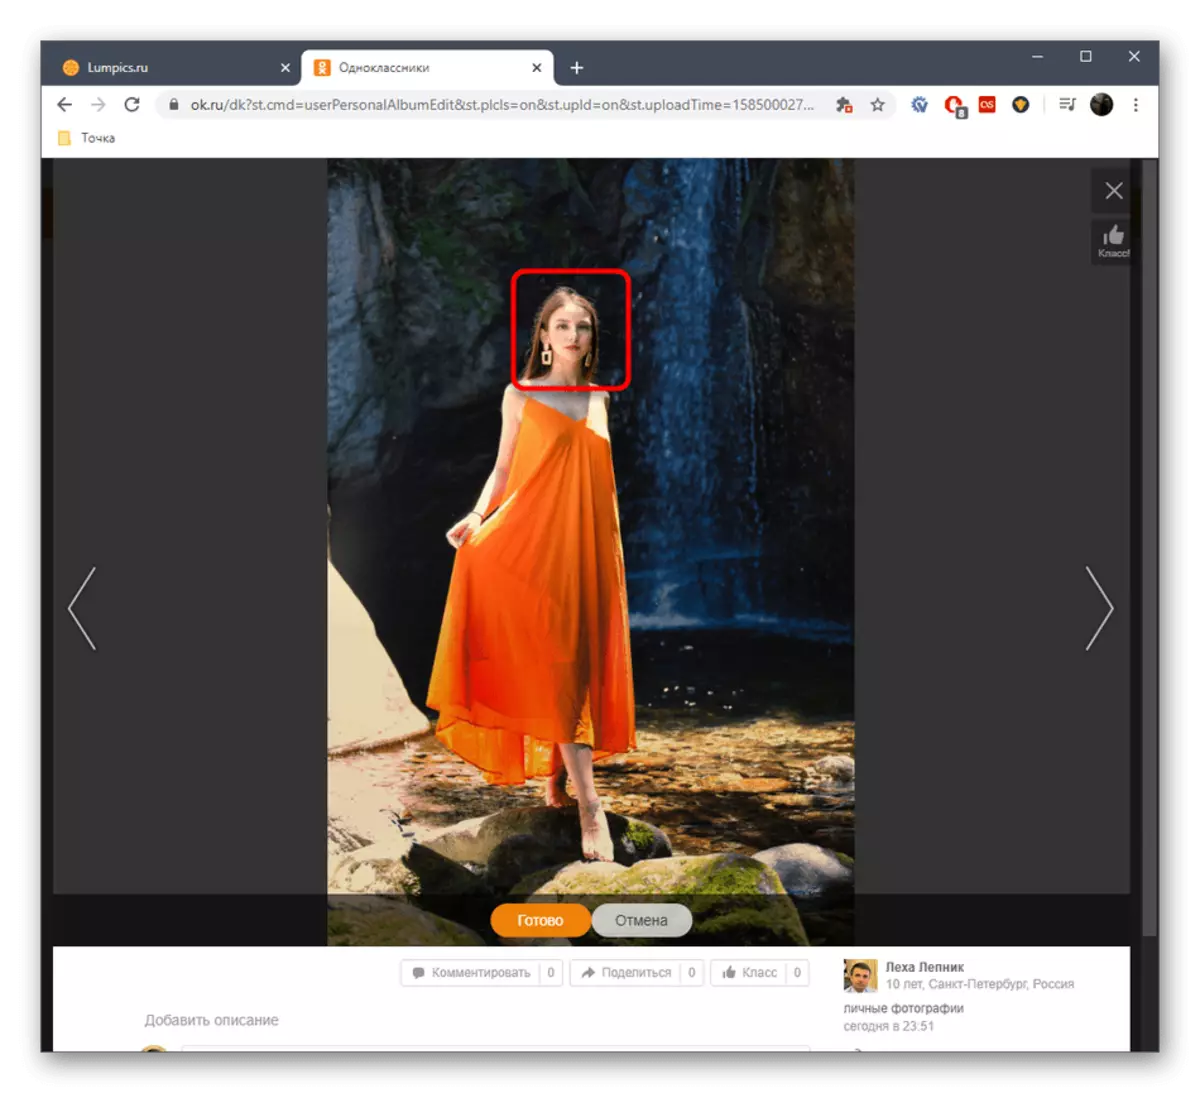 Вибір області для установки мітки на людину на фото в повній версії сайту Однокласники